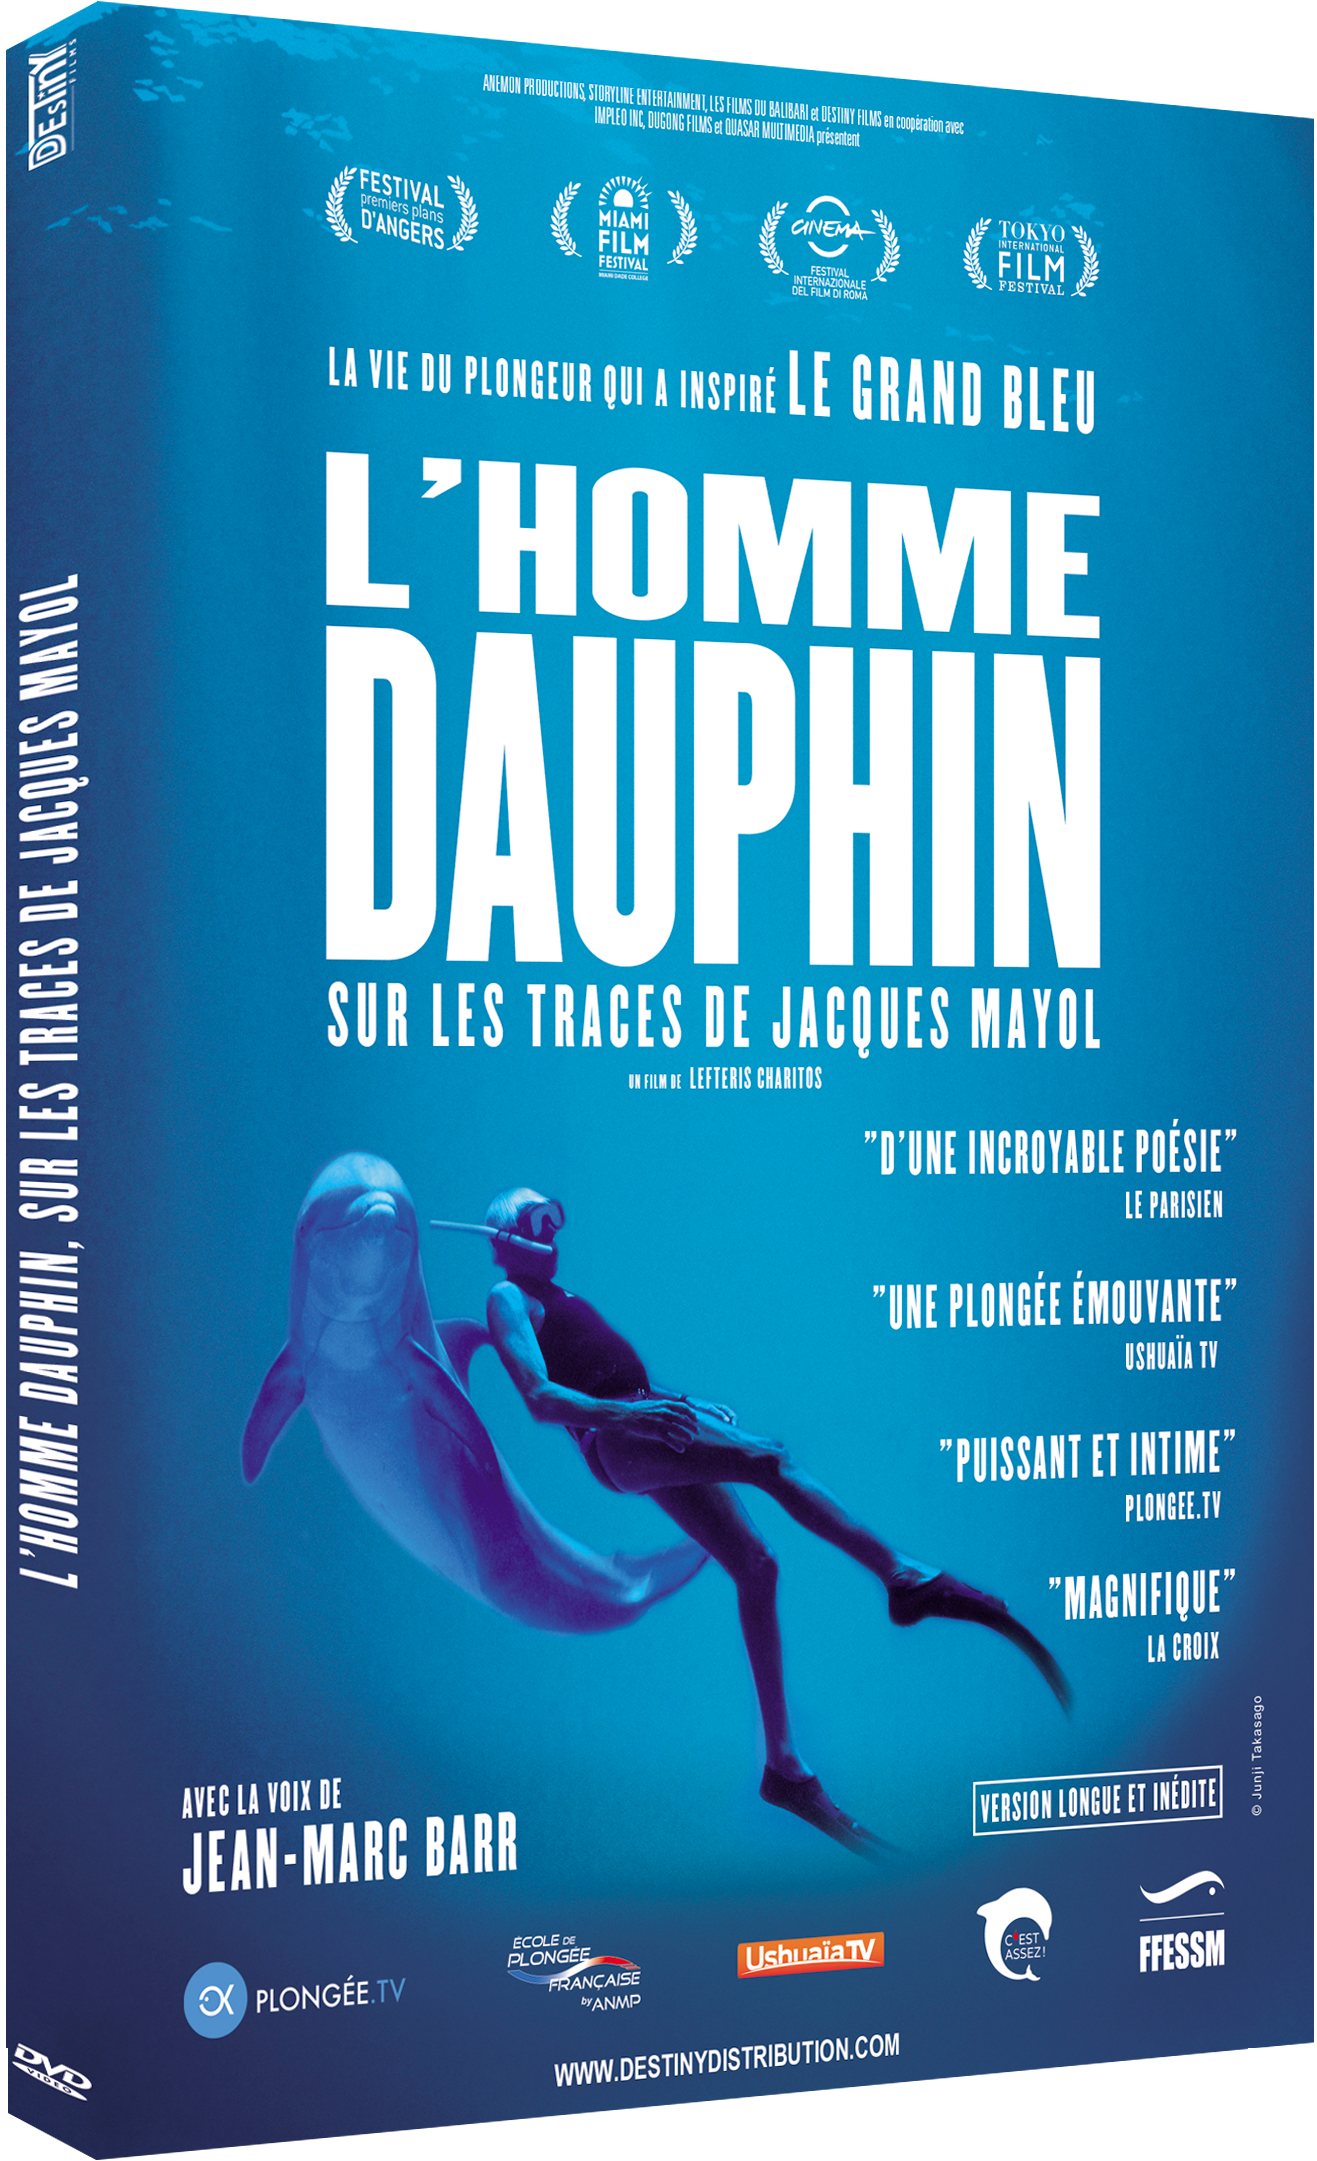 L'HOMME DAUPHIN, SUR LES TRACES DE JACQUES MAYOL